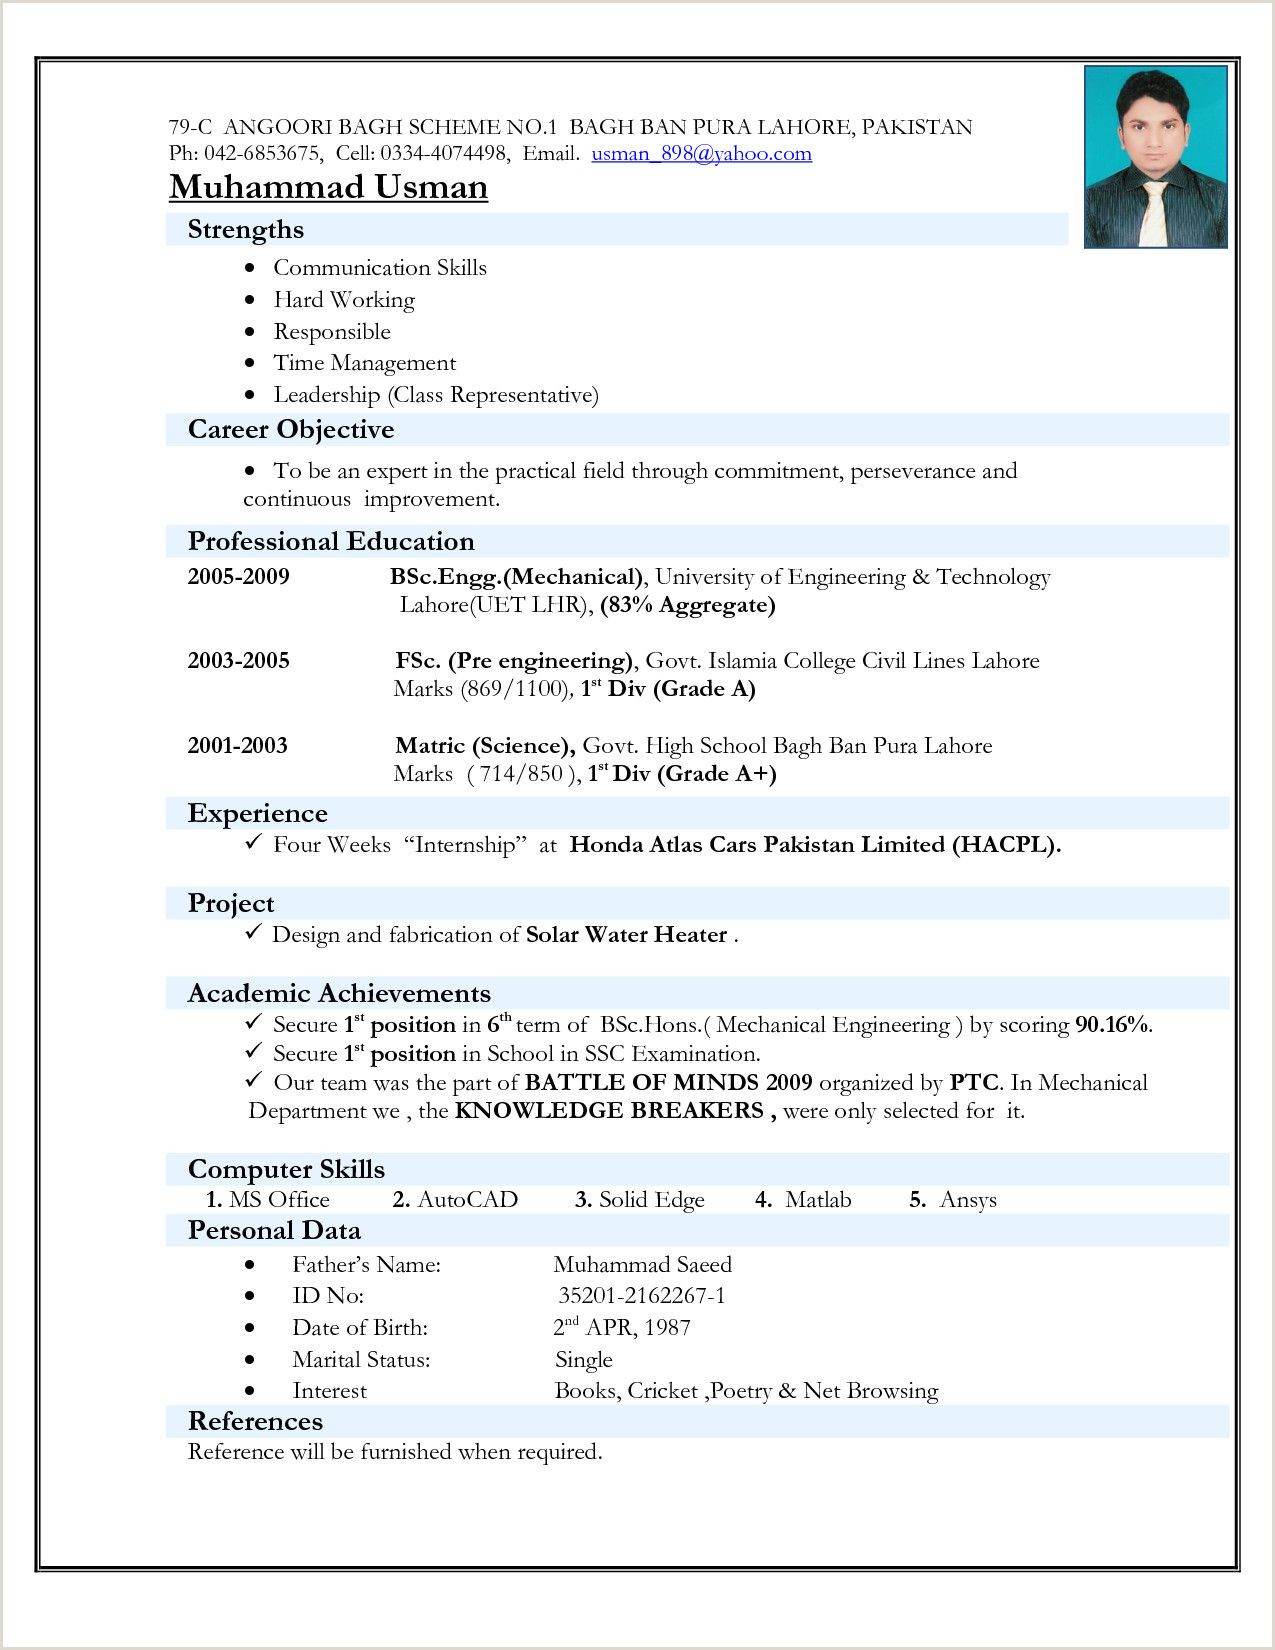 Sample Resume for Bsc Nursing Fresher 14 Resume format for Freshers Ideas Resume format for Freshers …